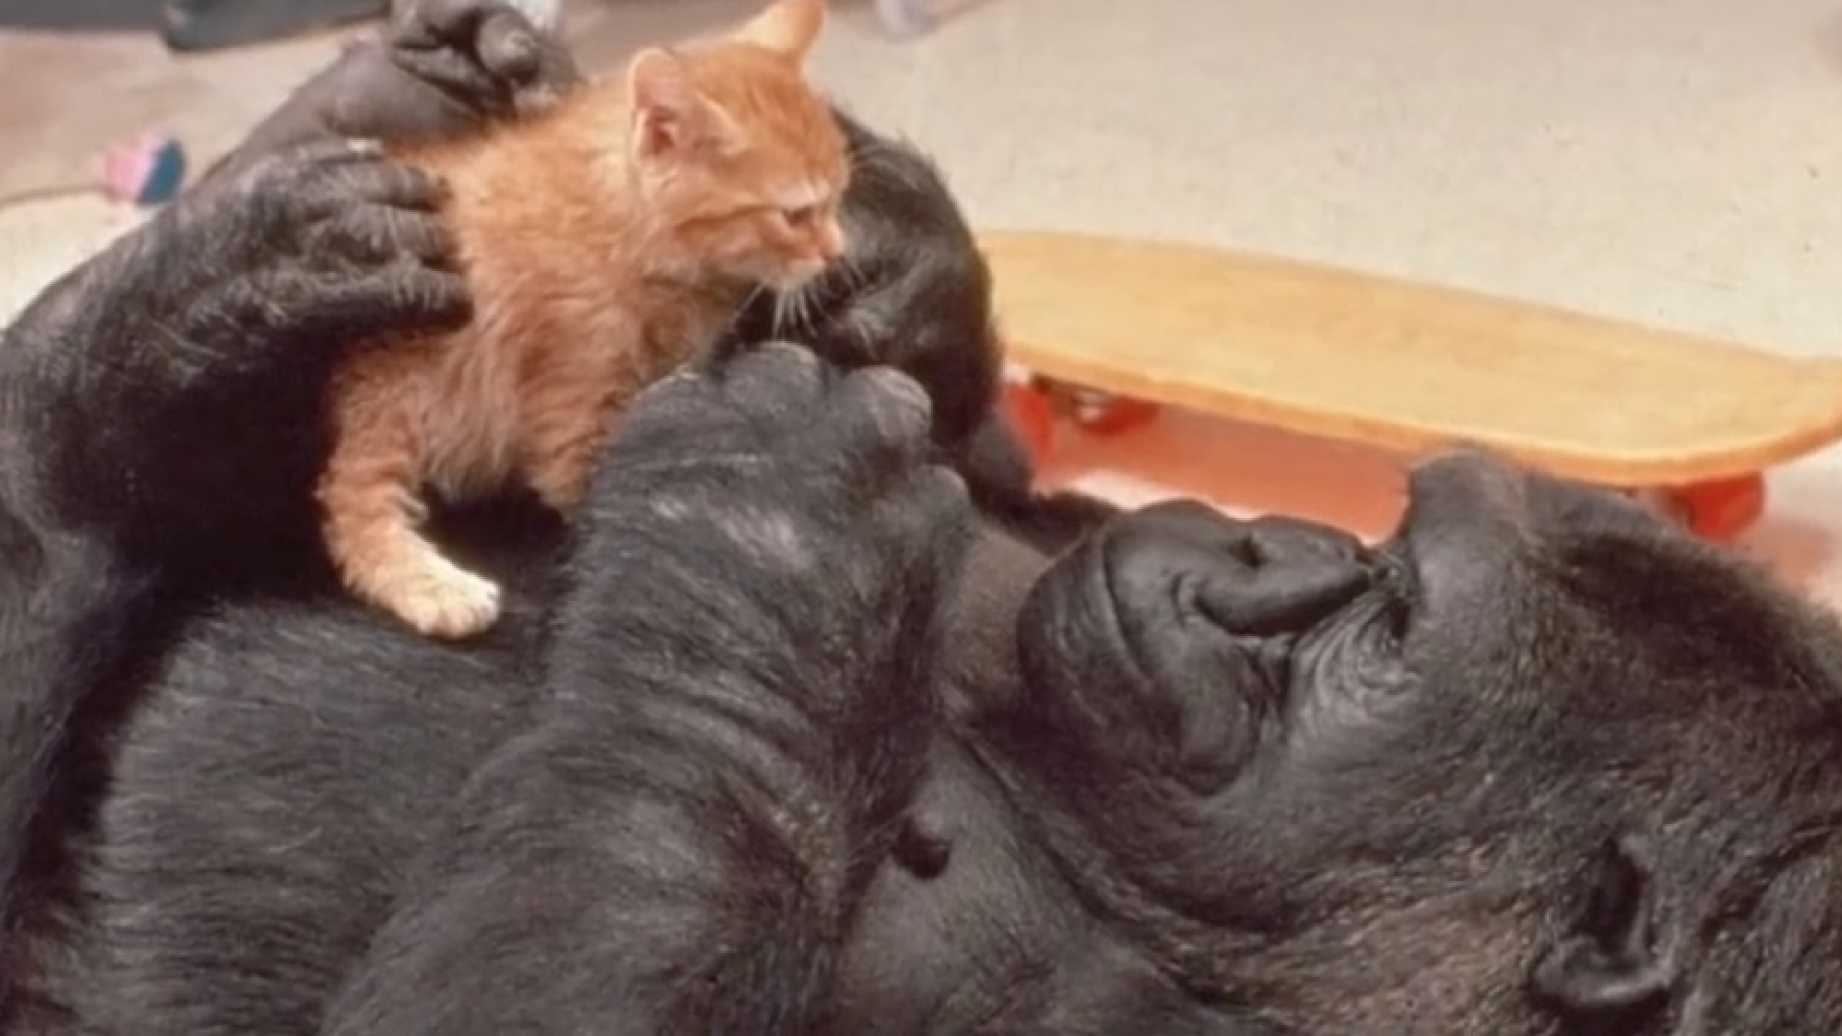 Addio a Koko, la gorilla che comunicava con la lingua dei segni [VIDEO]